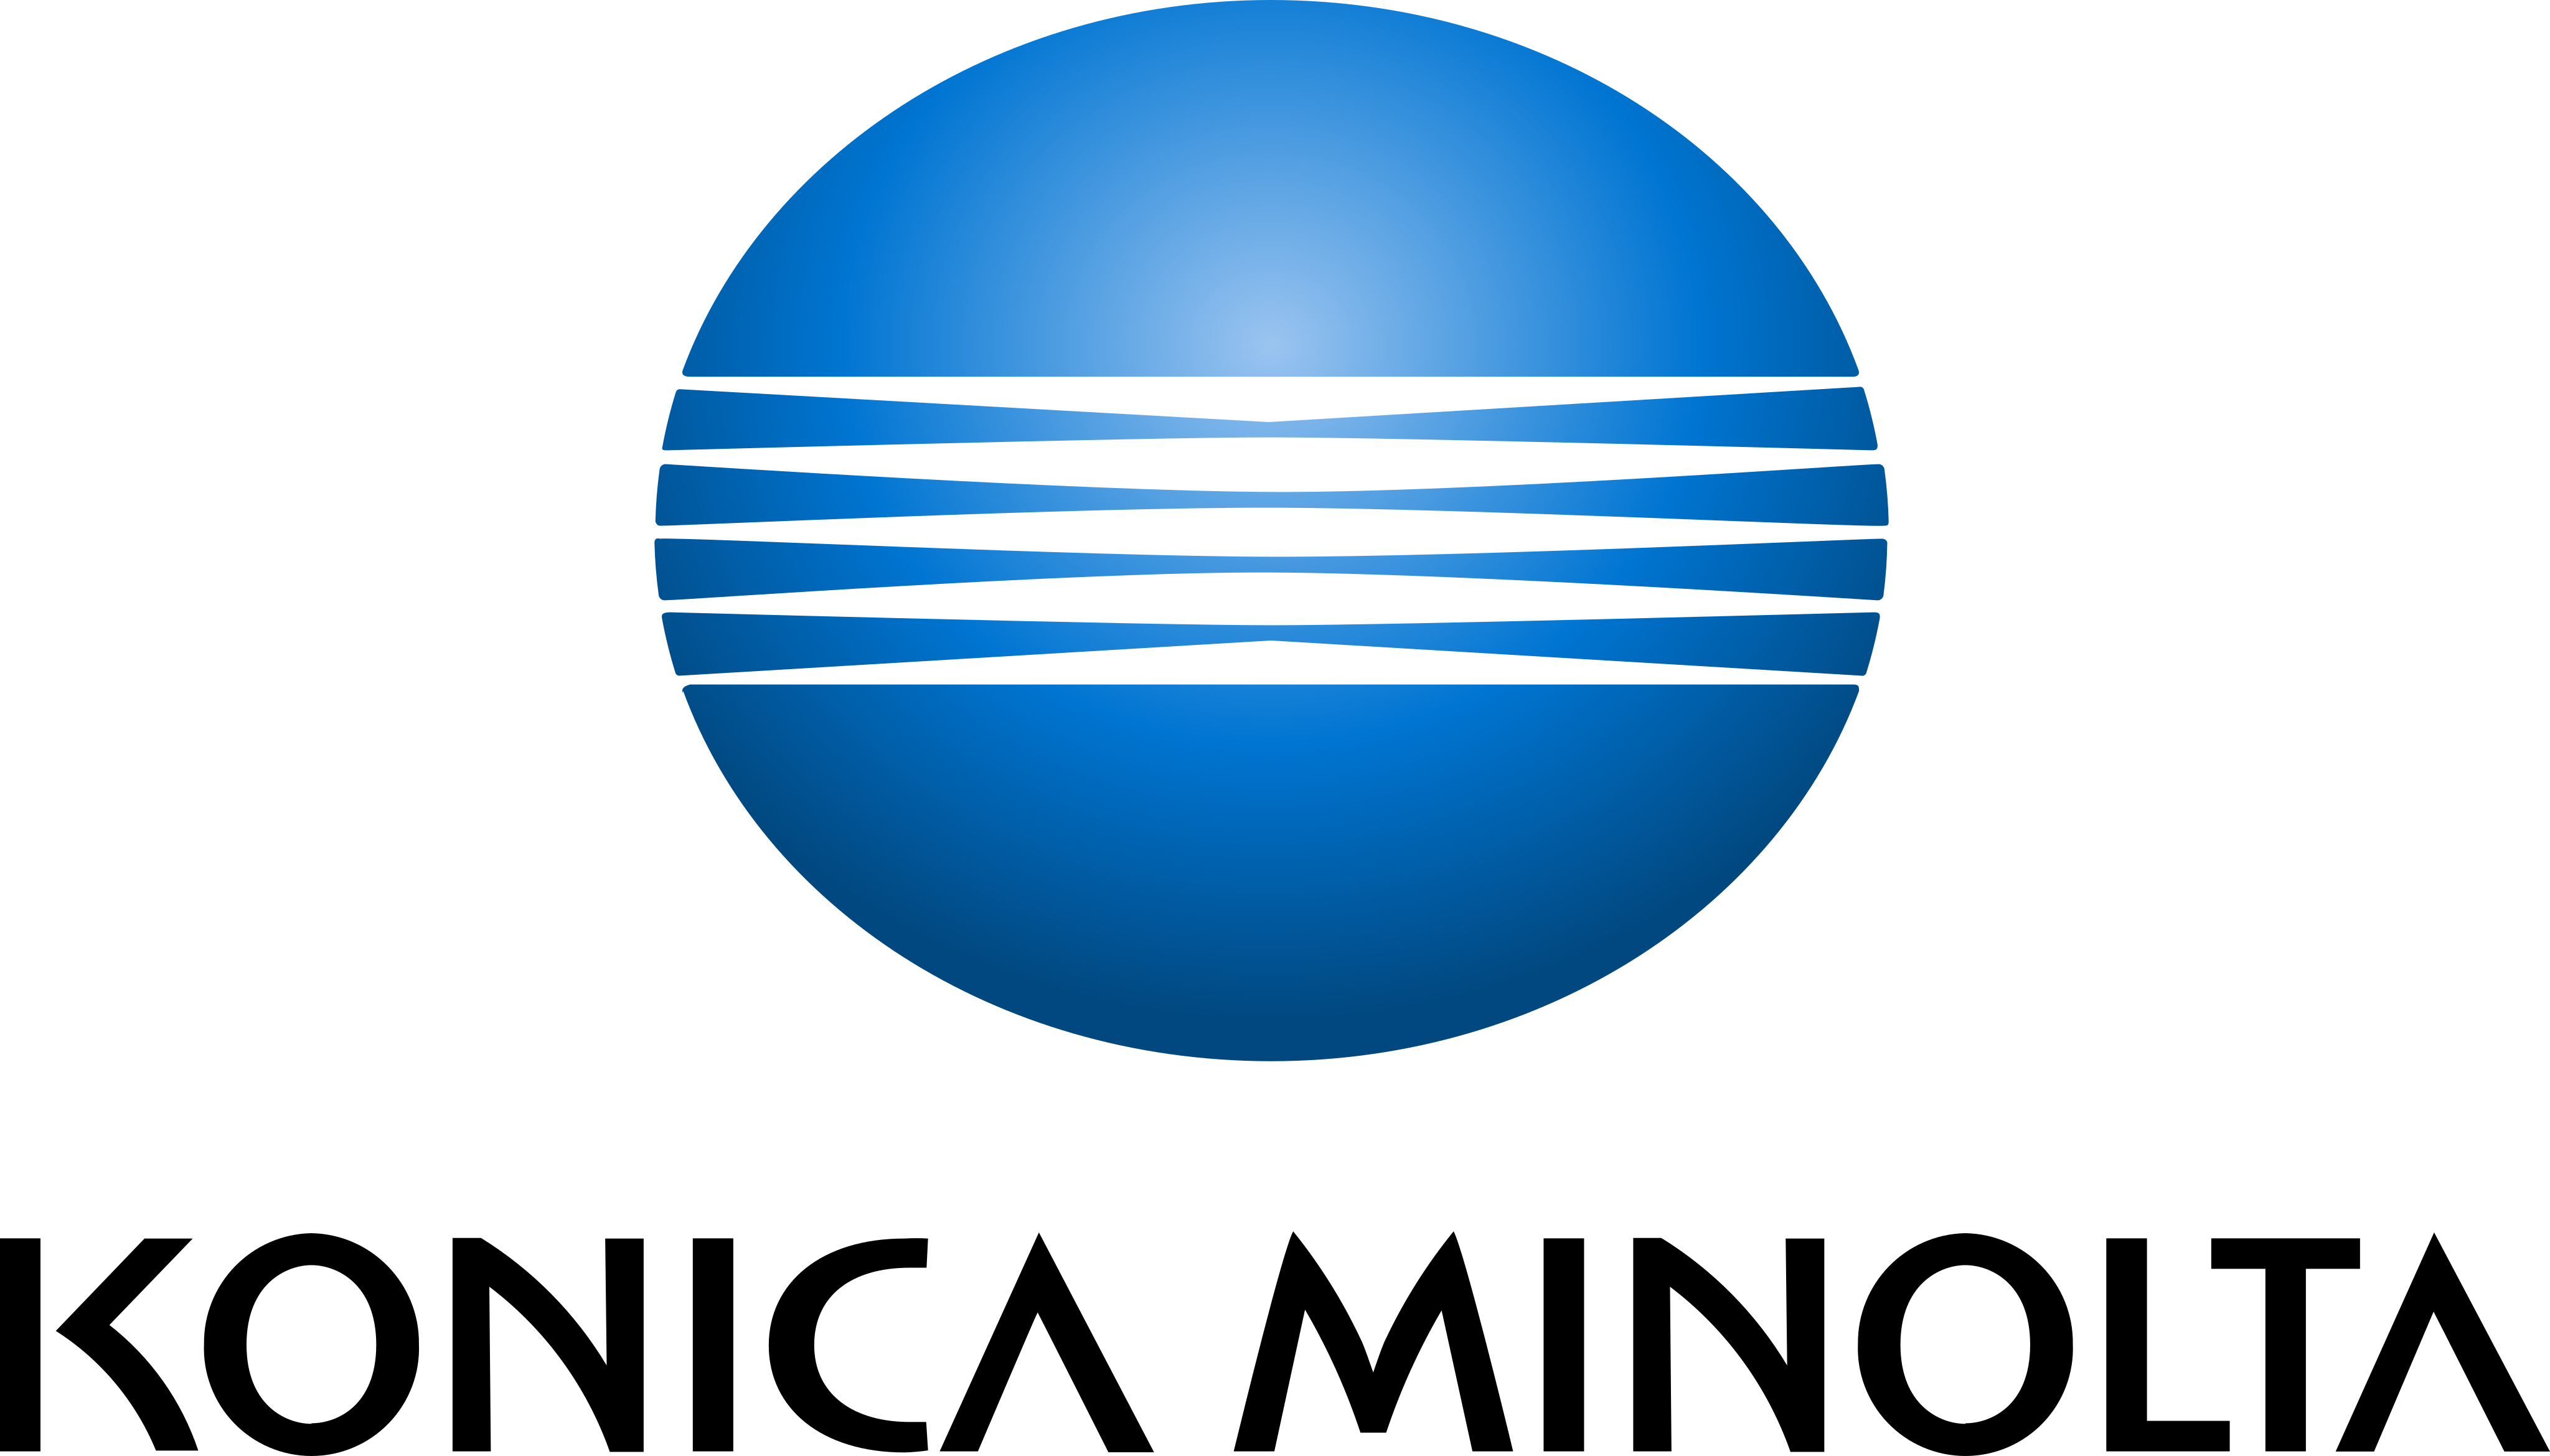 konicca minolta logo 1 - Konica Minolta Logo